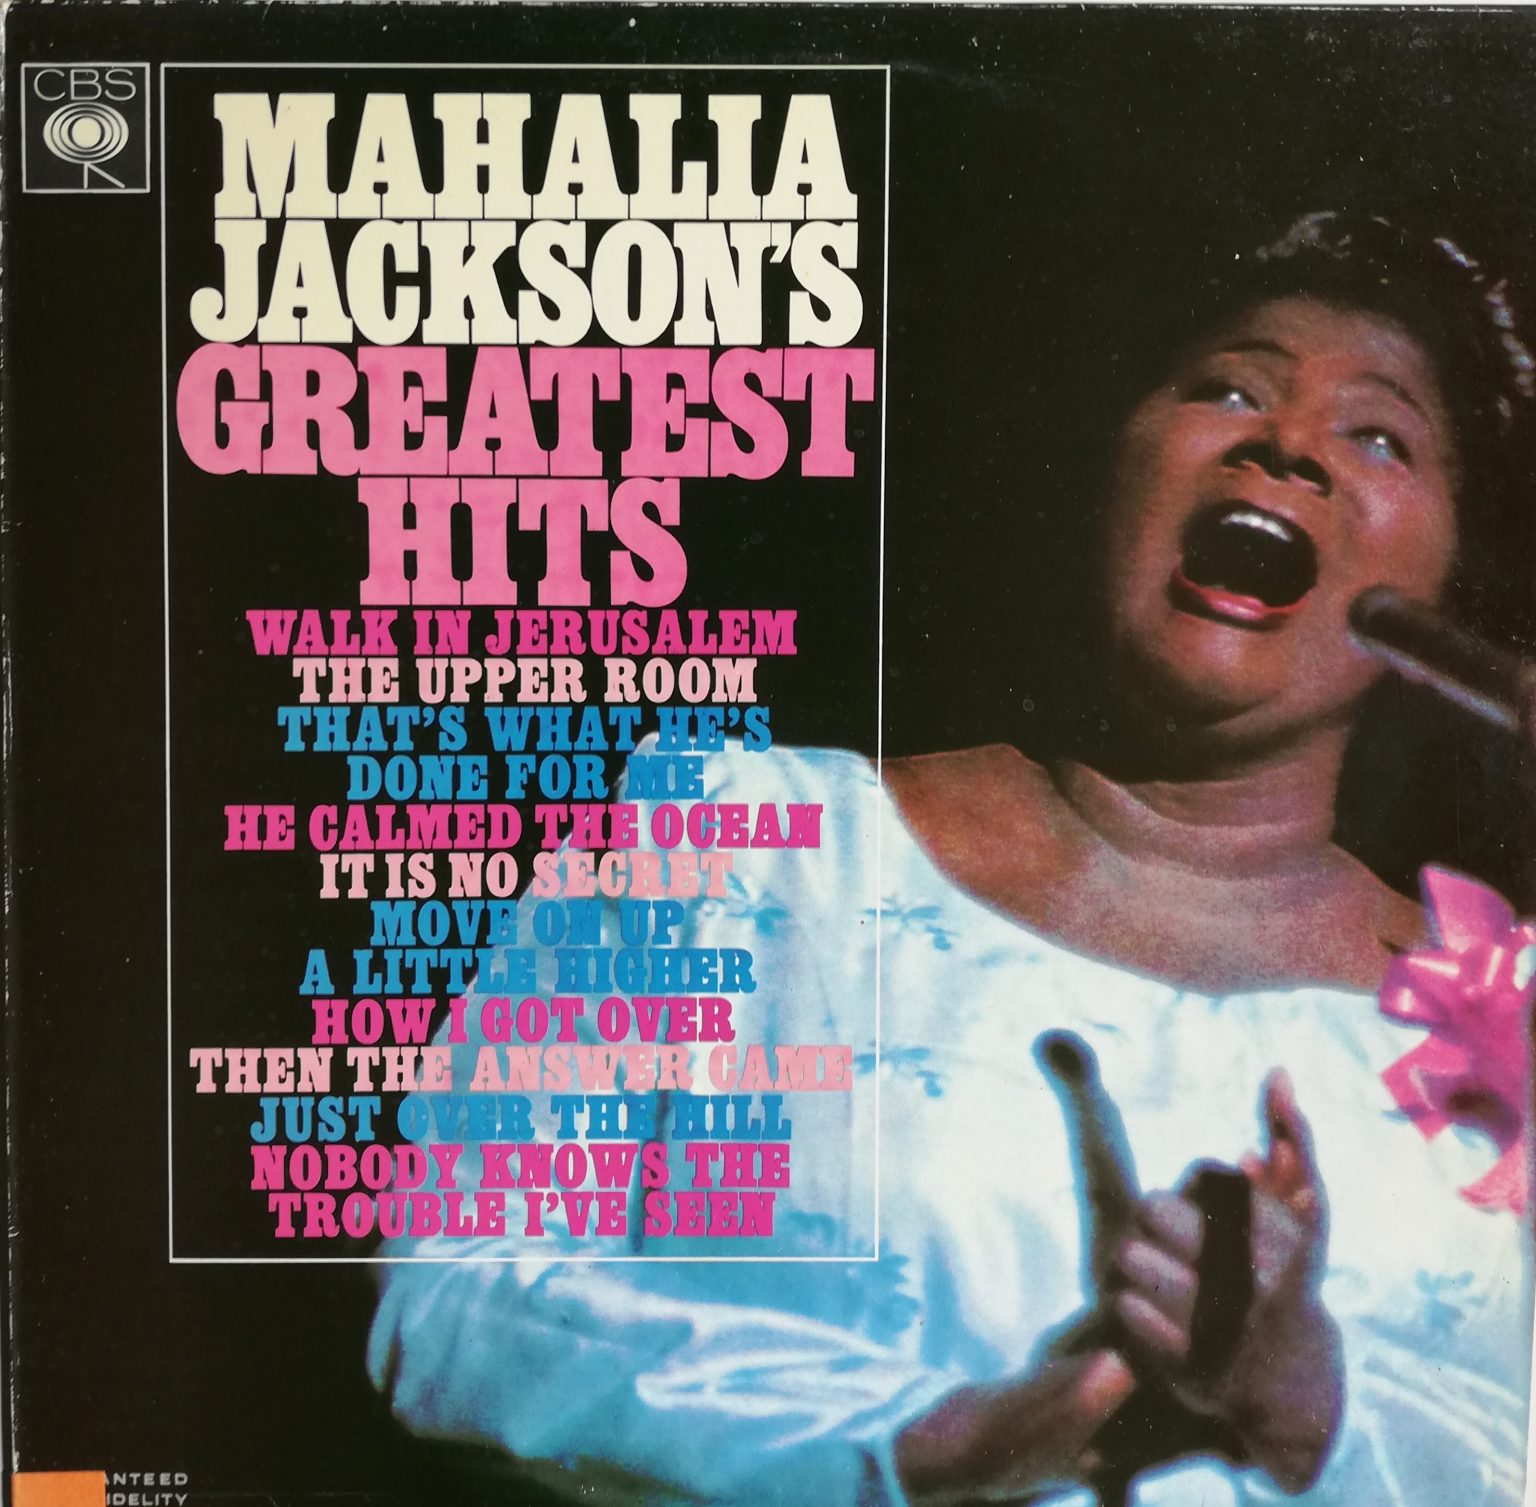 Mahalia Jackson – Mahalia Jackson’s Greatest Hits